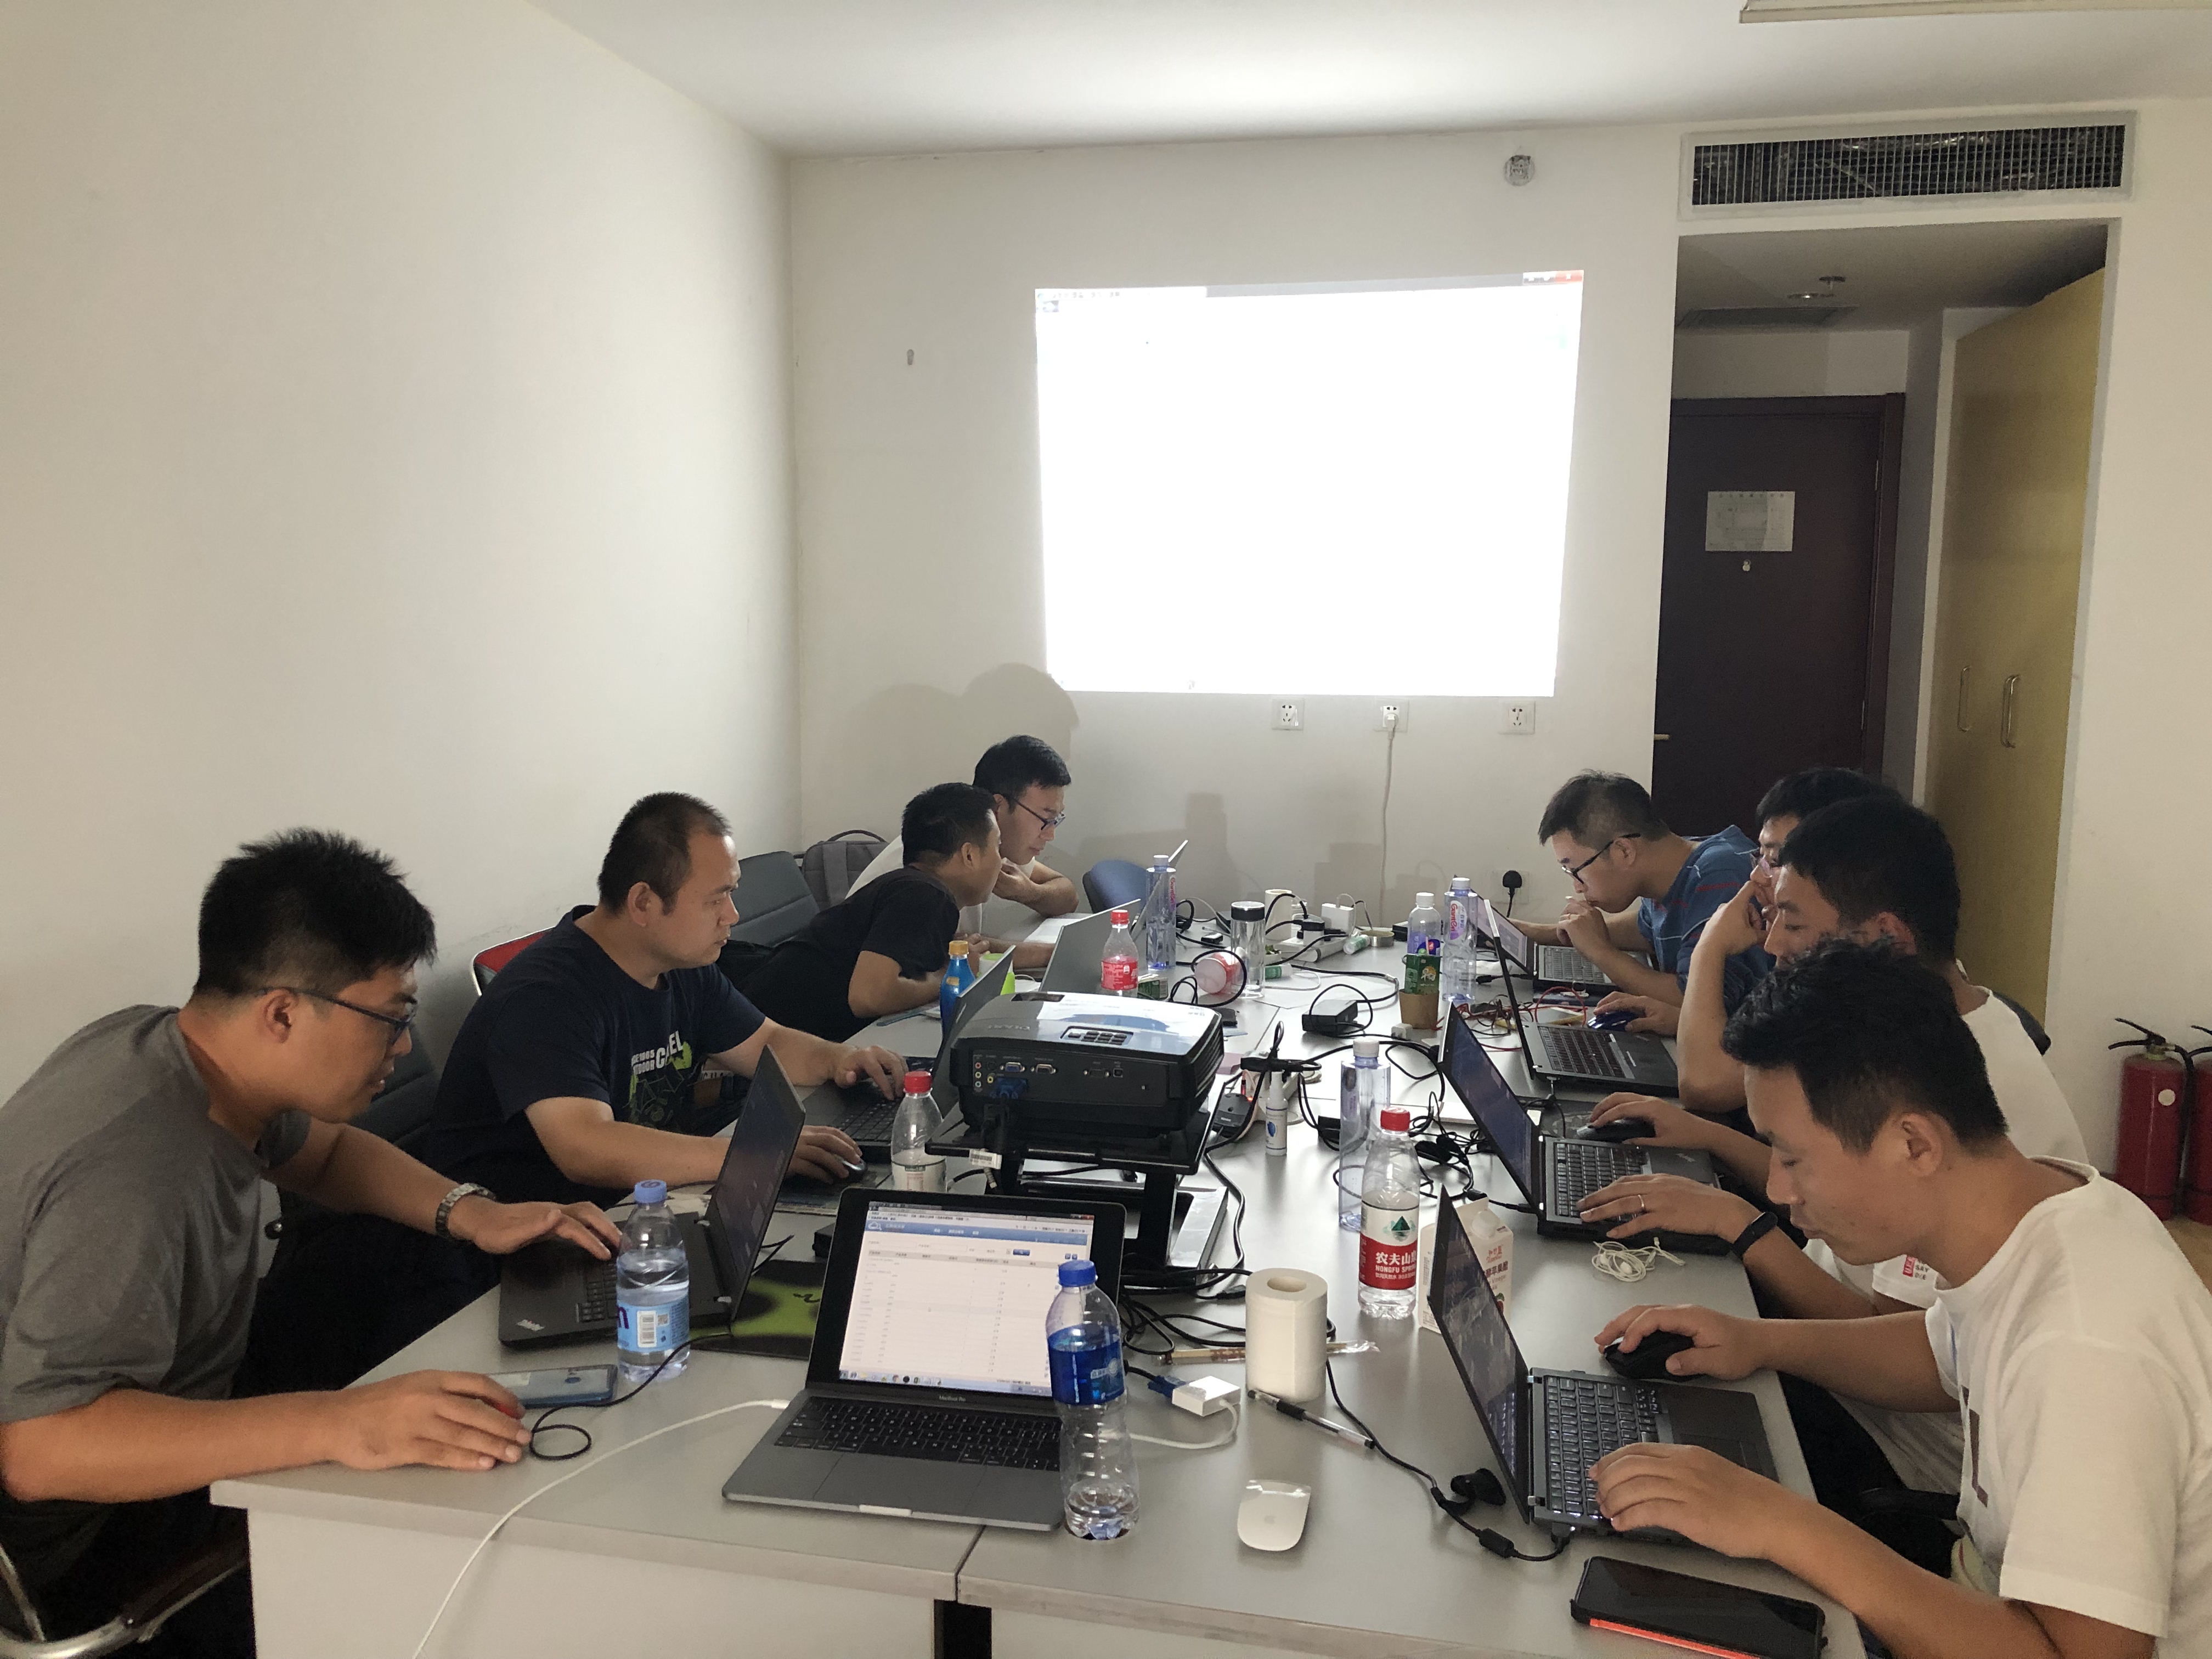 iS-RPA 高级技术认证培训 北京 20190917 班 - 培训完成